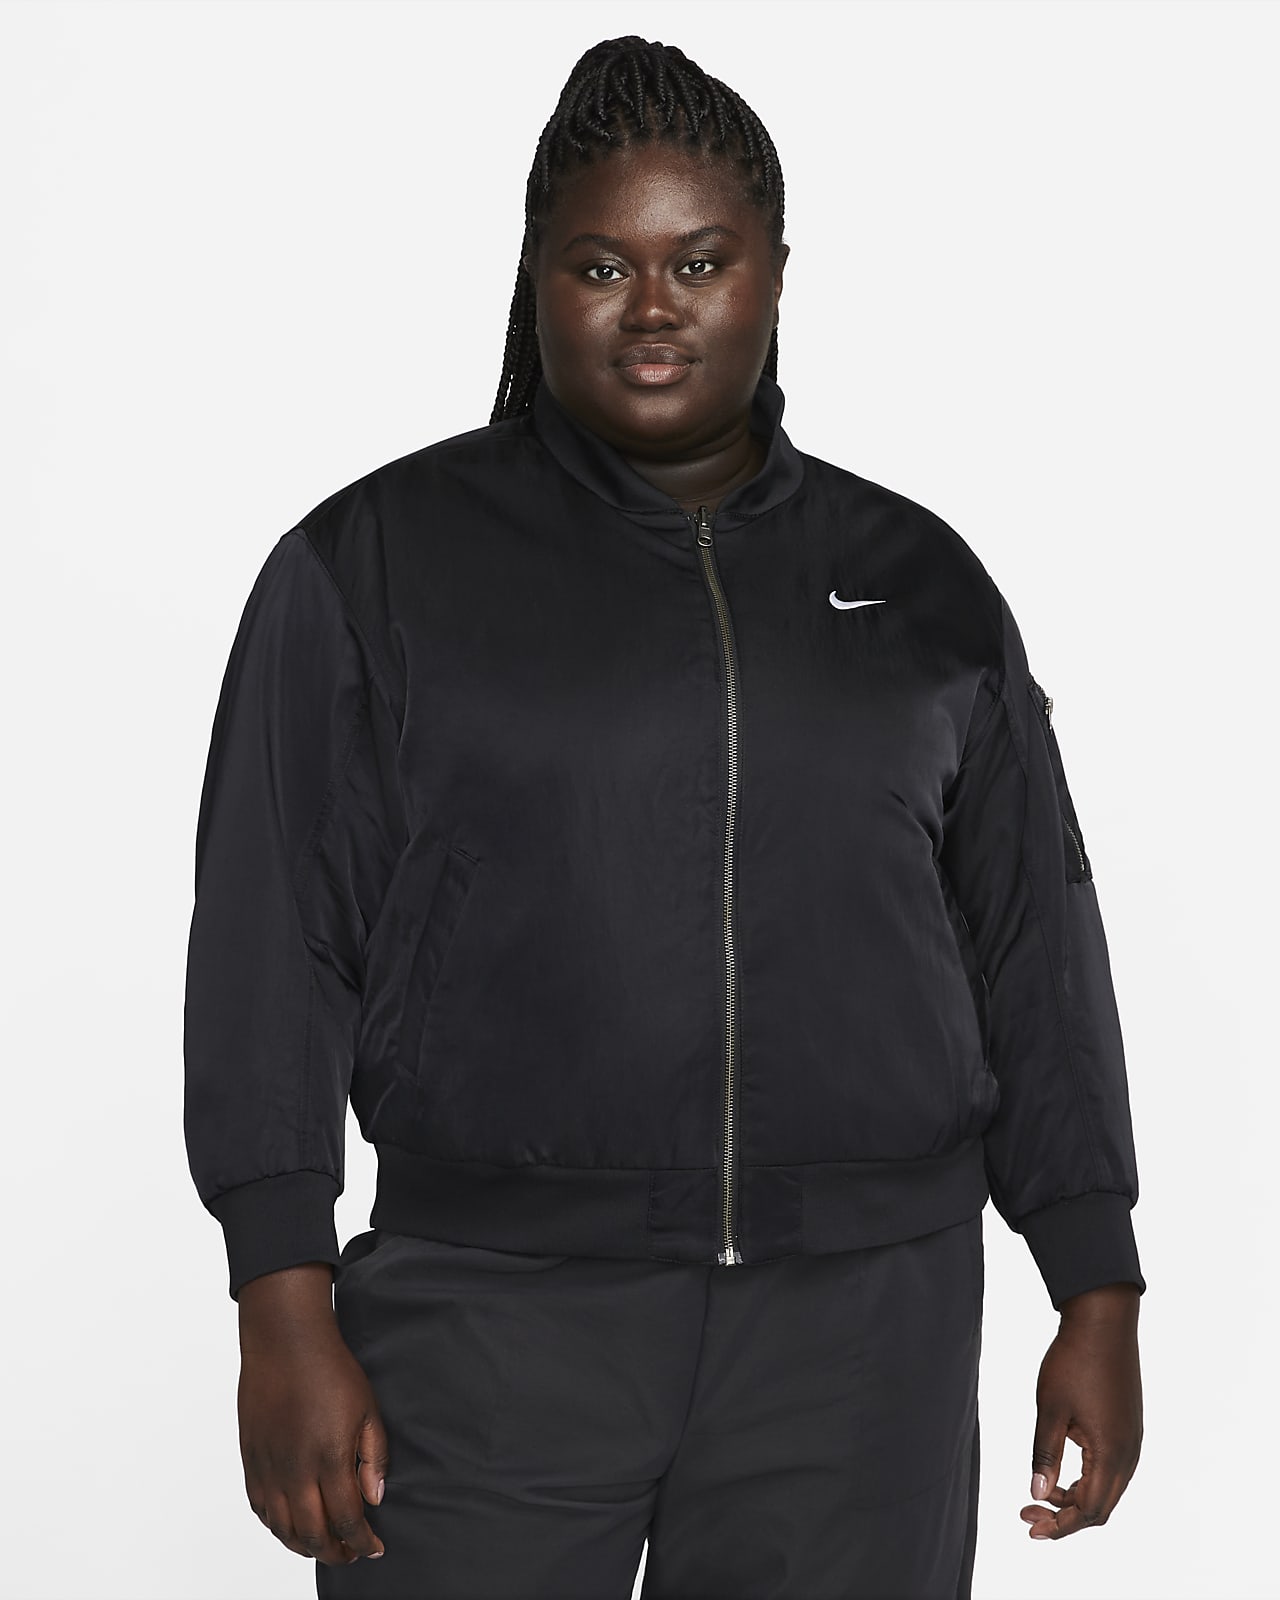 Nike Sportswear kifordítható női egyetemi pilótakabát (plus size méret)